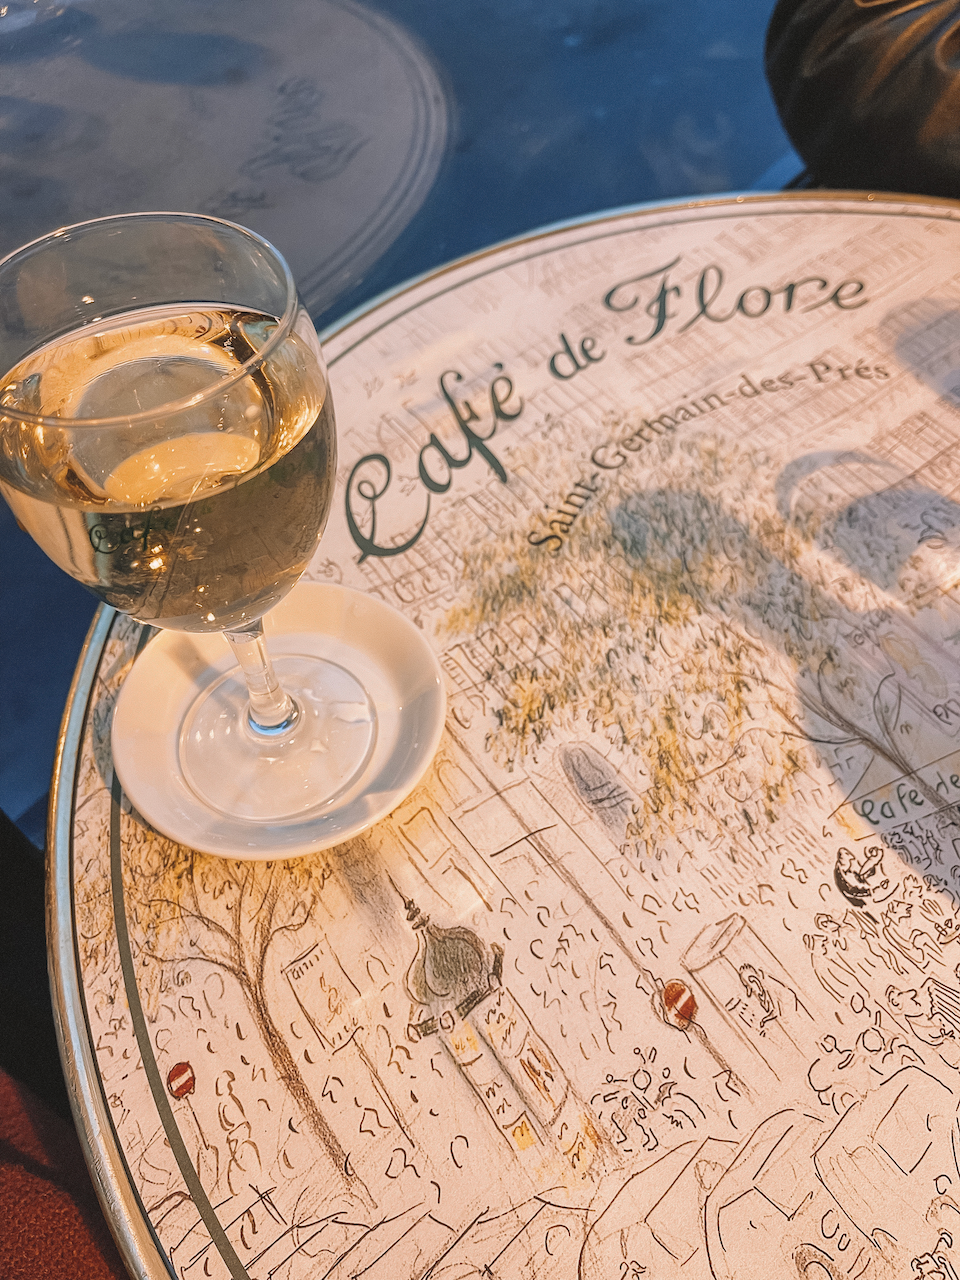 Nappe du Café de Flore et coupe de vin blanc - Paris - France